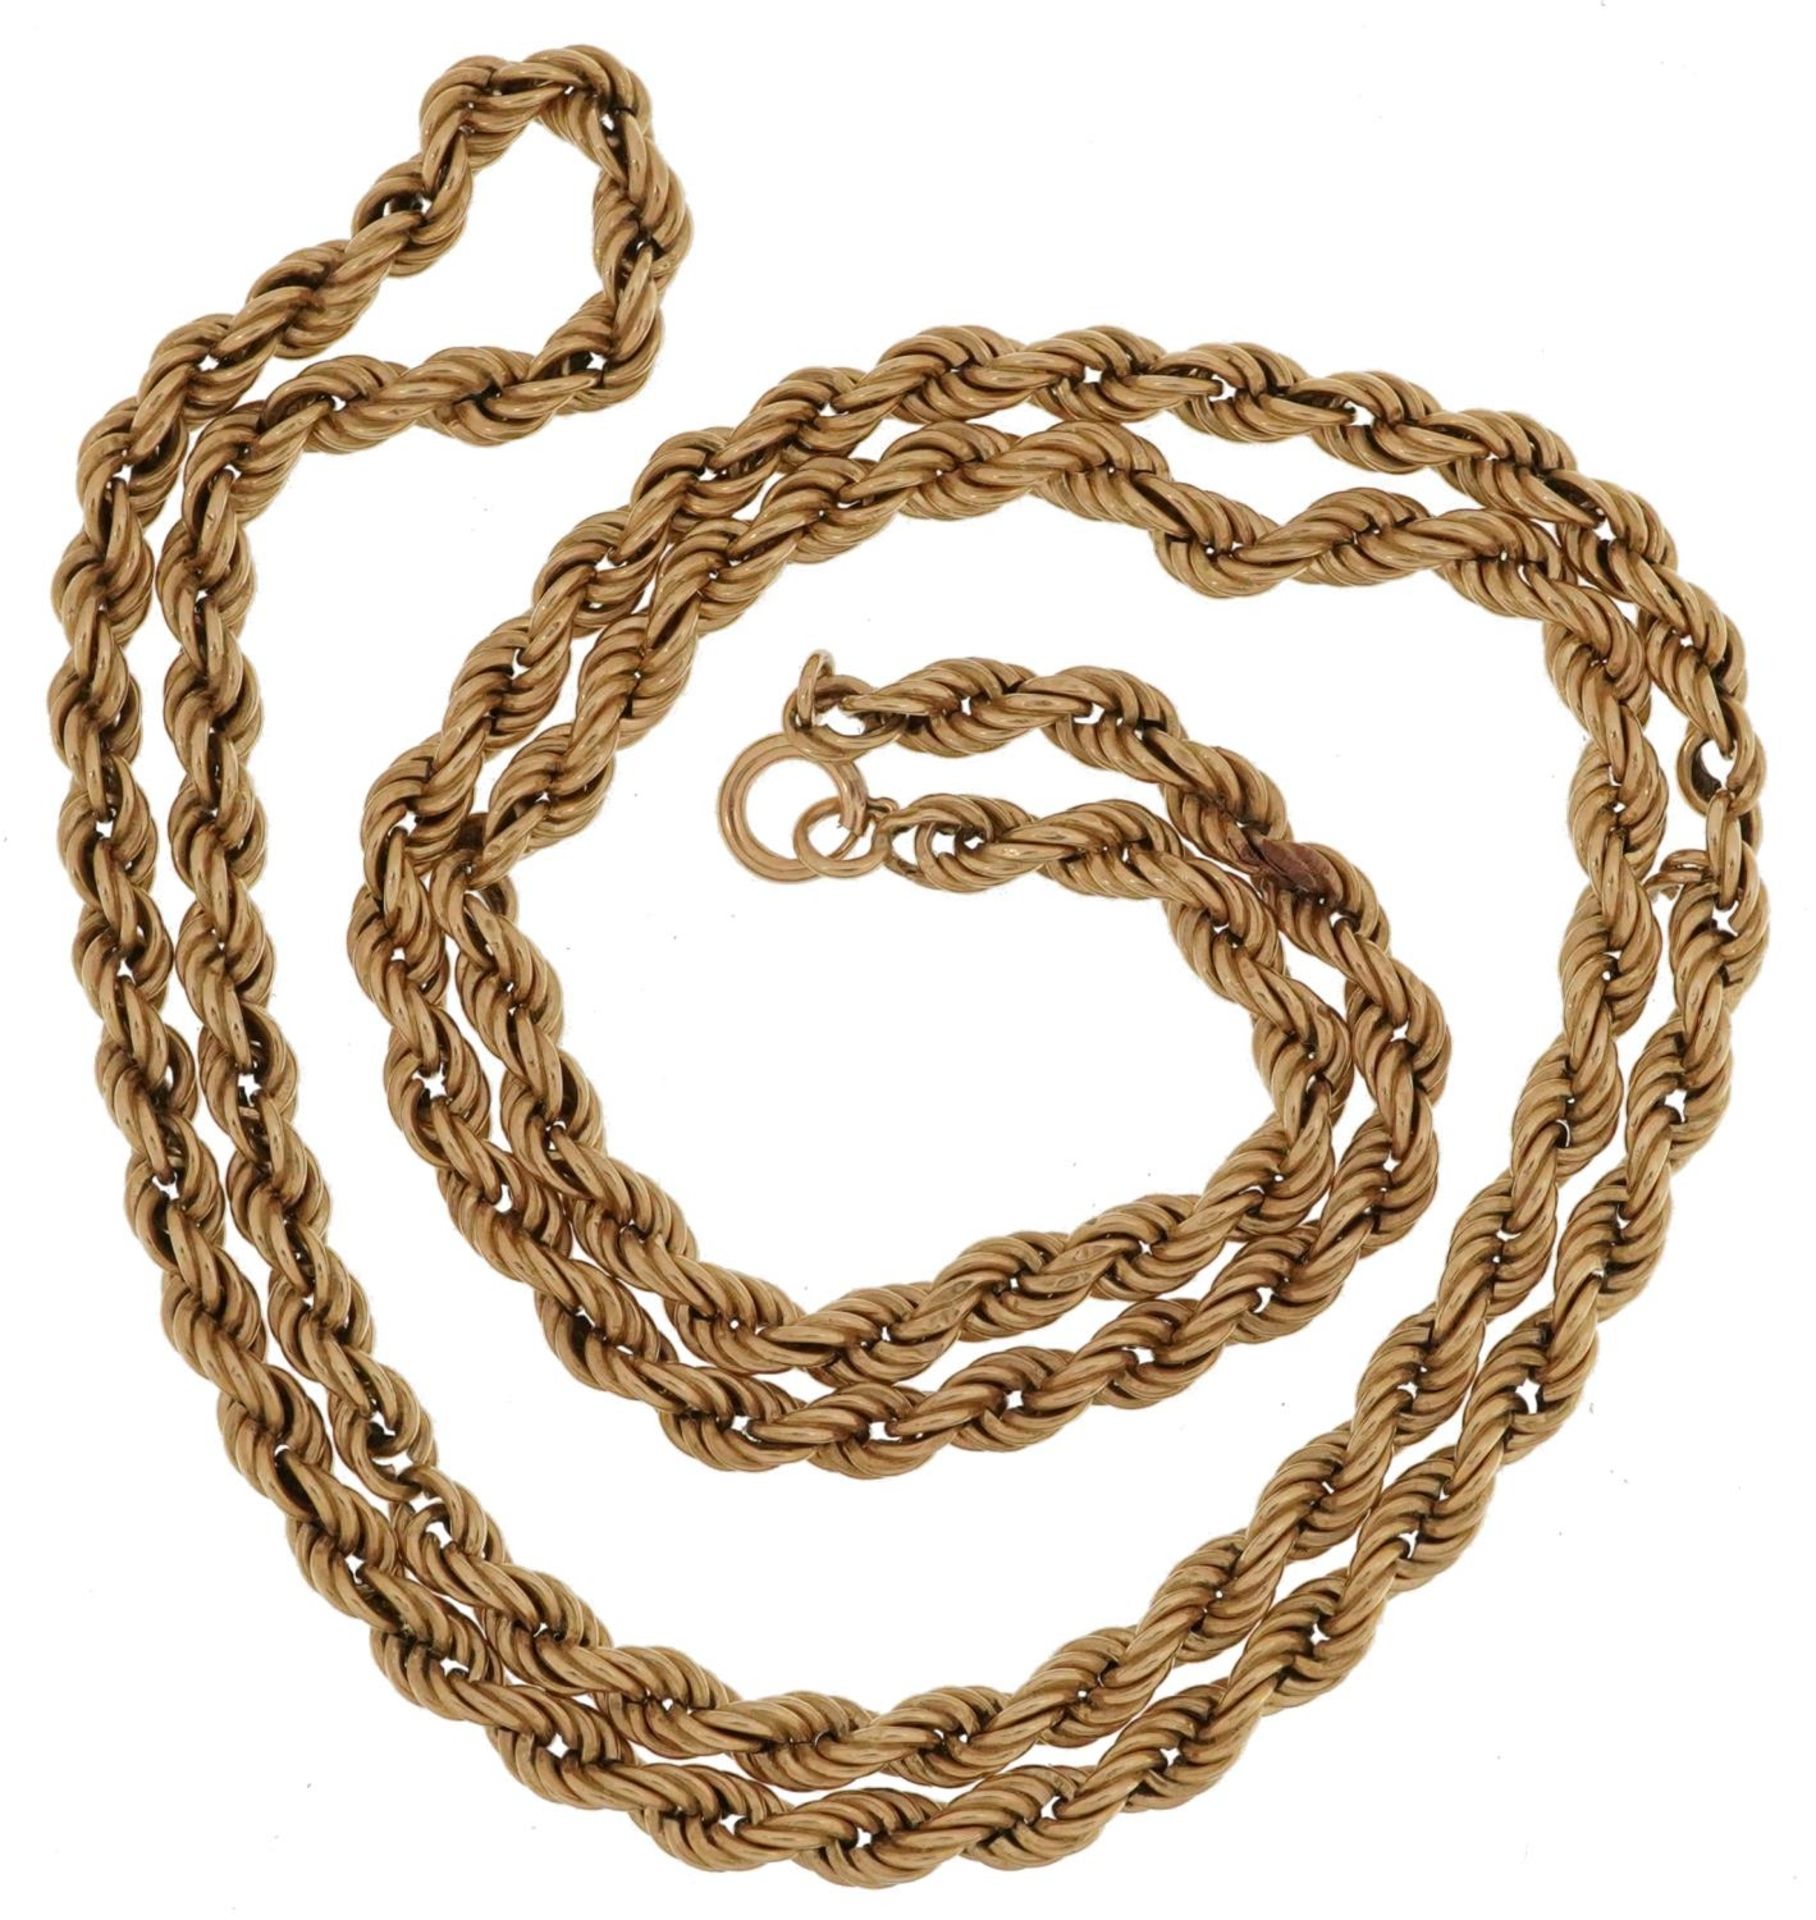 9ct gold rope twist necklace, 50cm in length, 4.9g - Bild 2 aus 3